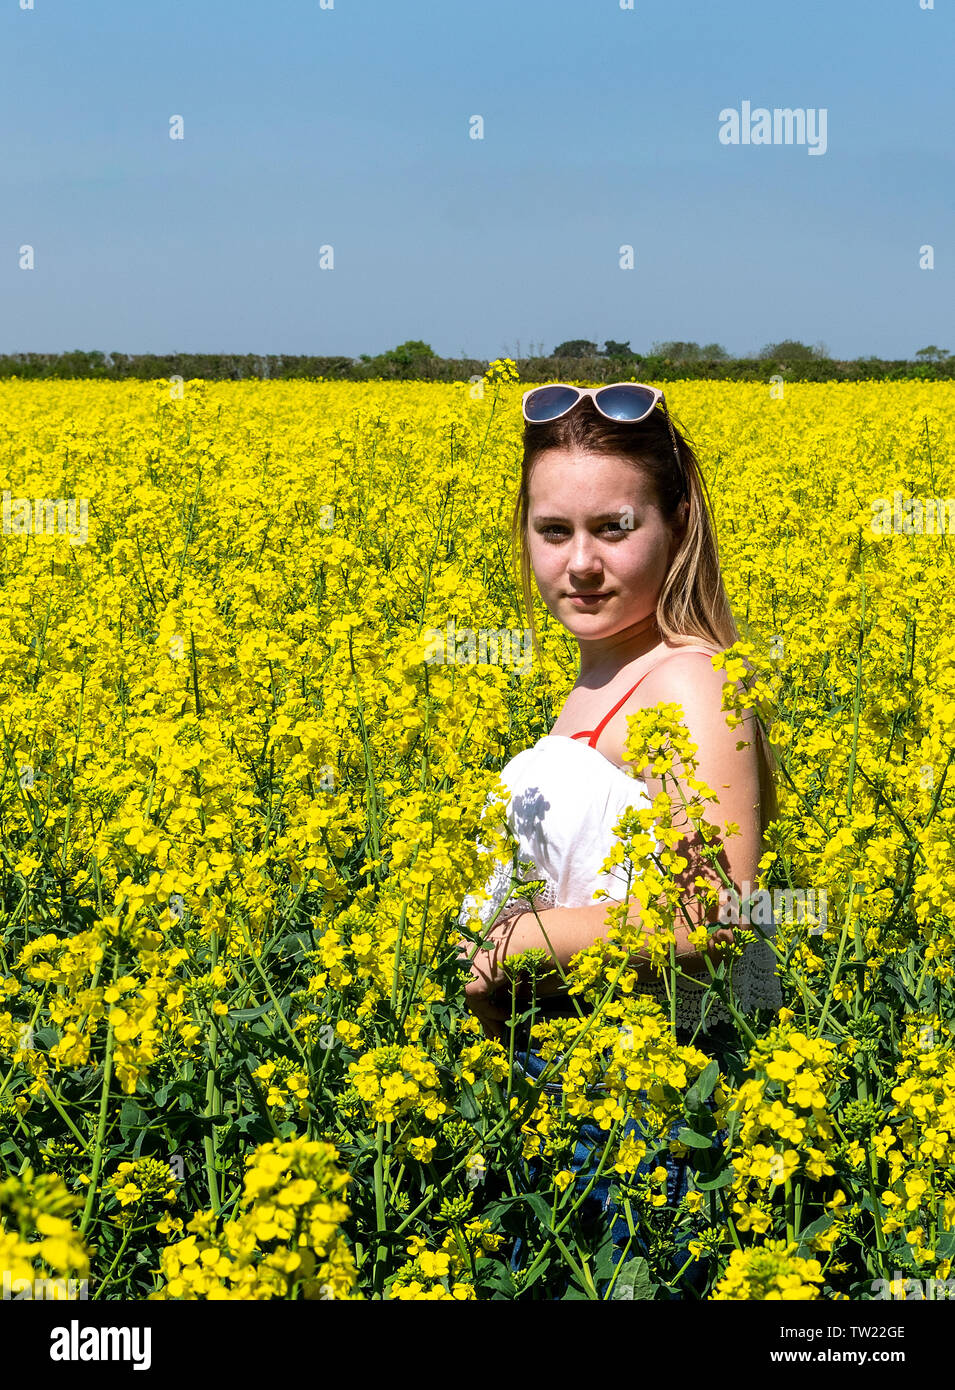 Une jeune adolescente dans un champ de colza, qui est en fleur pleine Banque D'Images